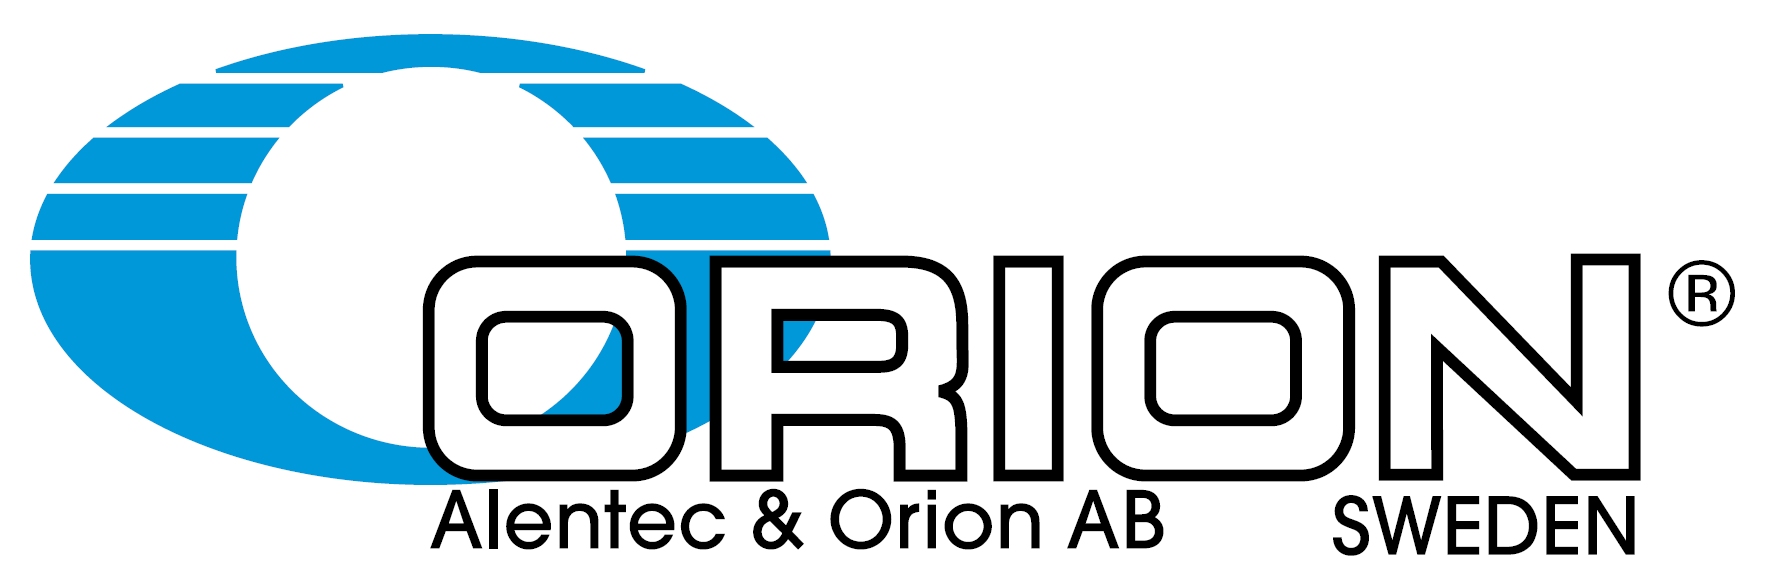 Bildresultat för Alentec & Orion AB logo